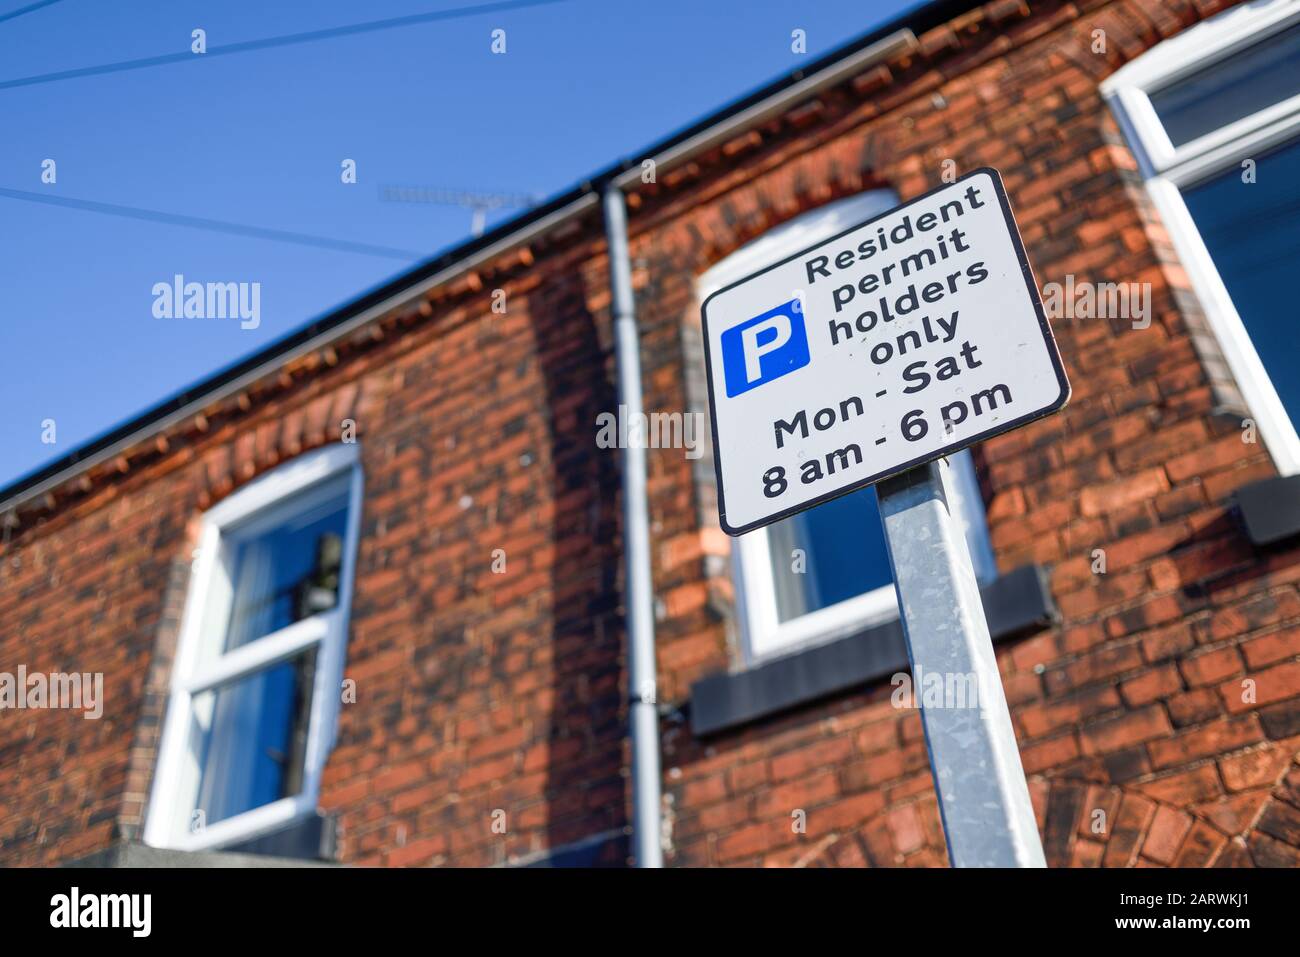 Permiso De Estacionamiento Para Residentes Sólo De Lunes A Sábado Regulaciones.Retford Nottinghamshire, Reino Unido. Foto de stock